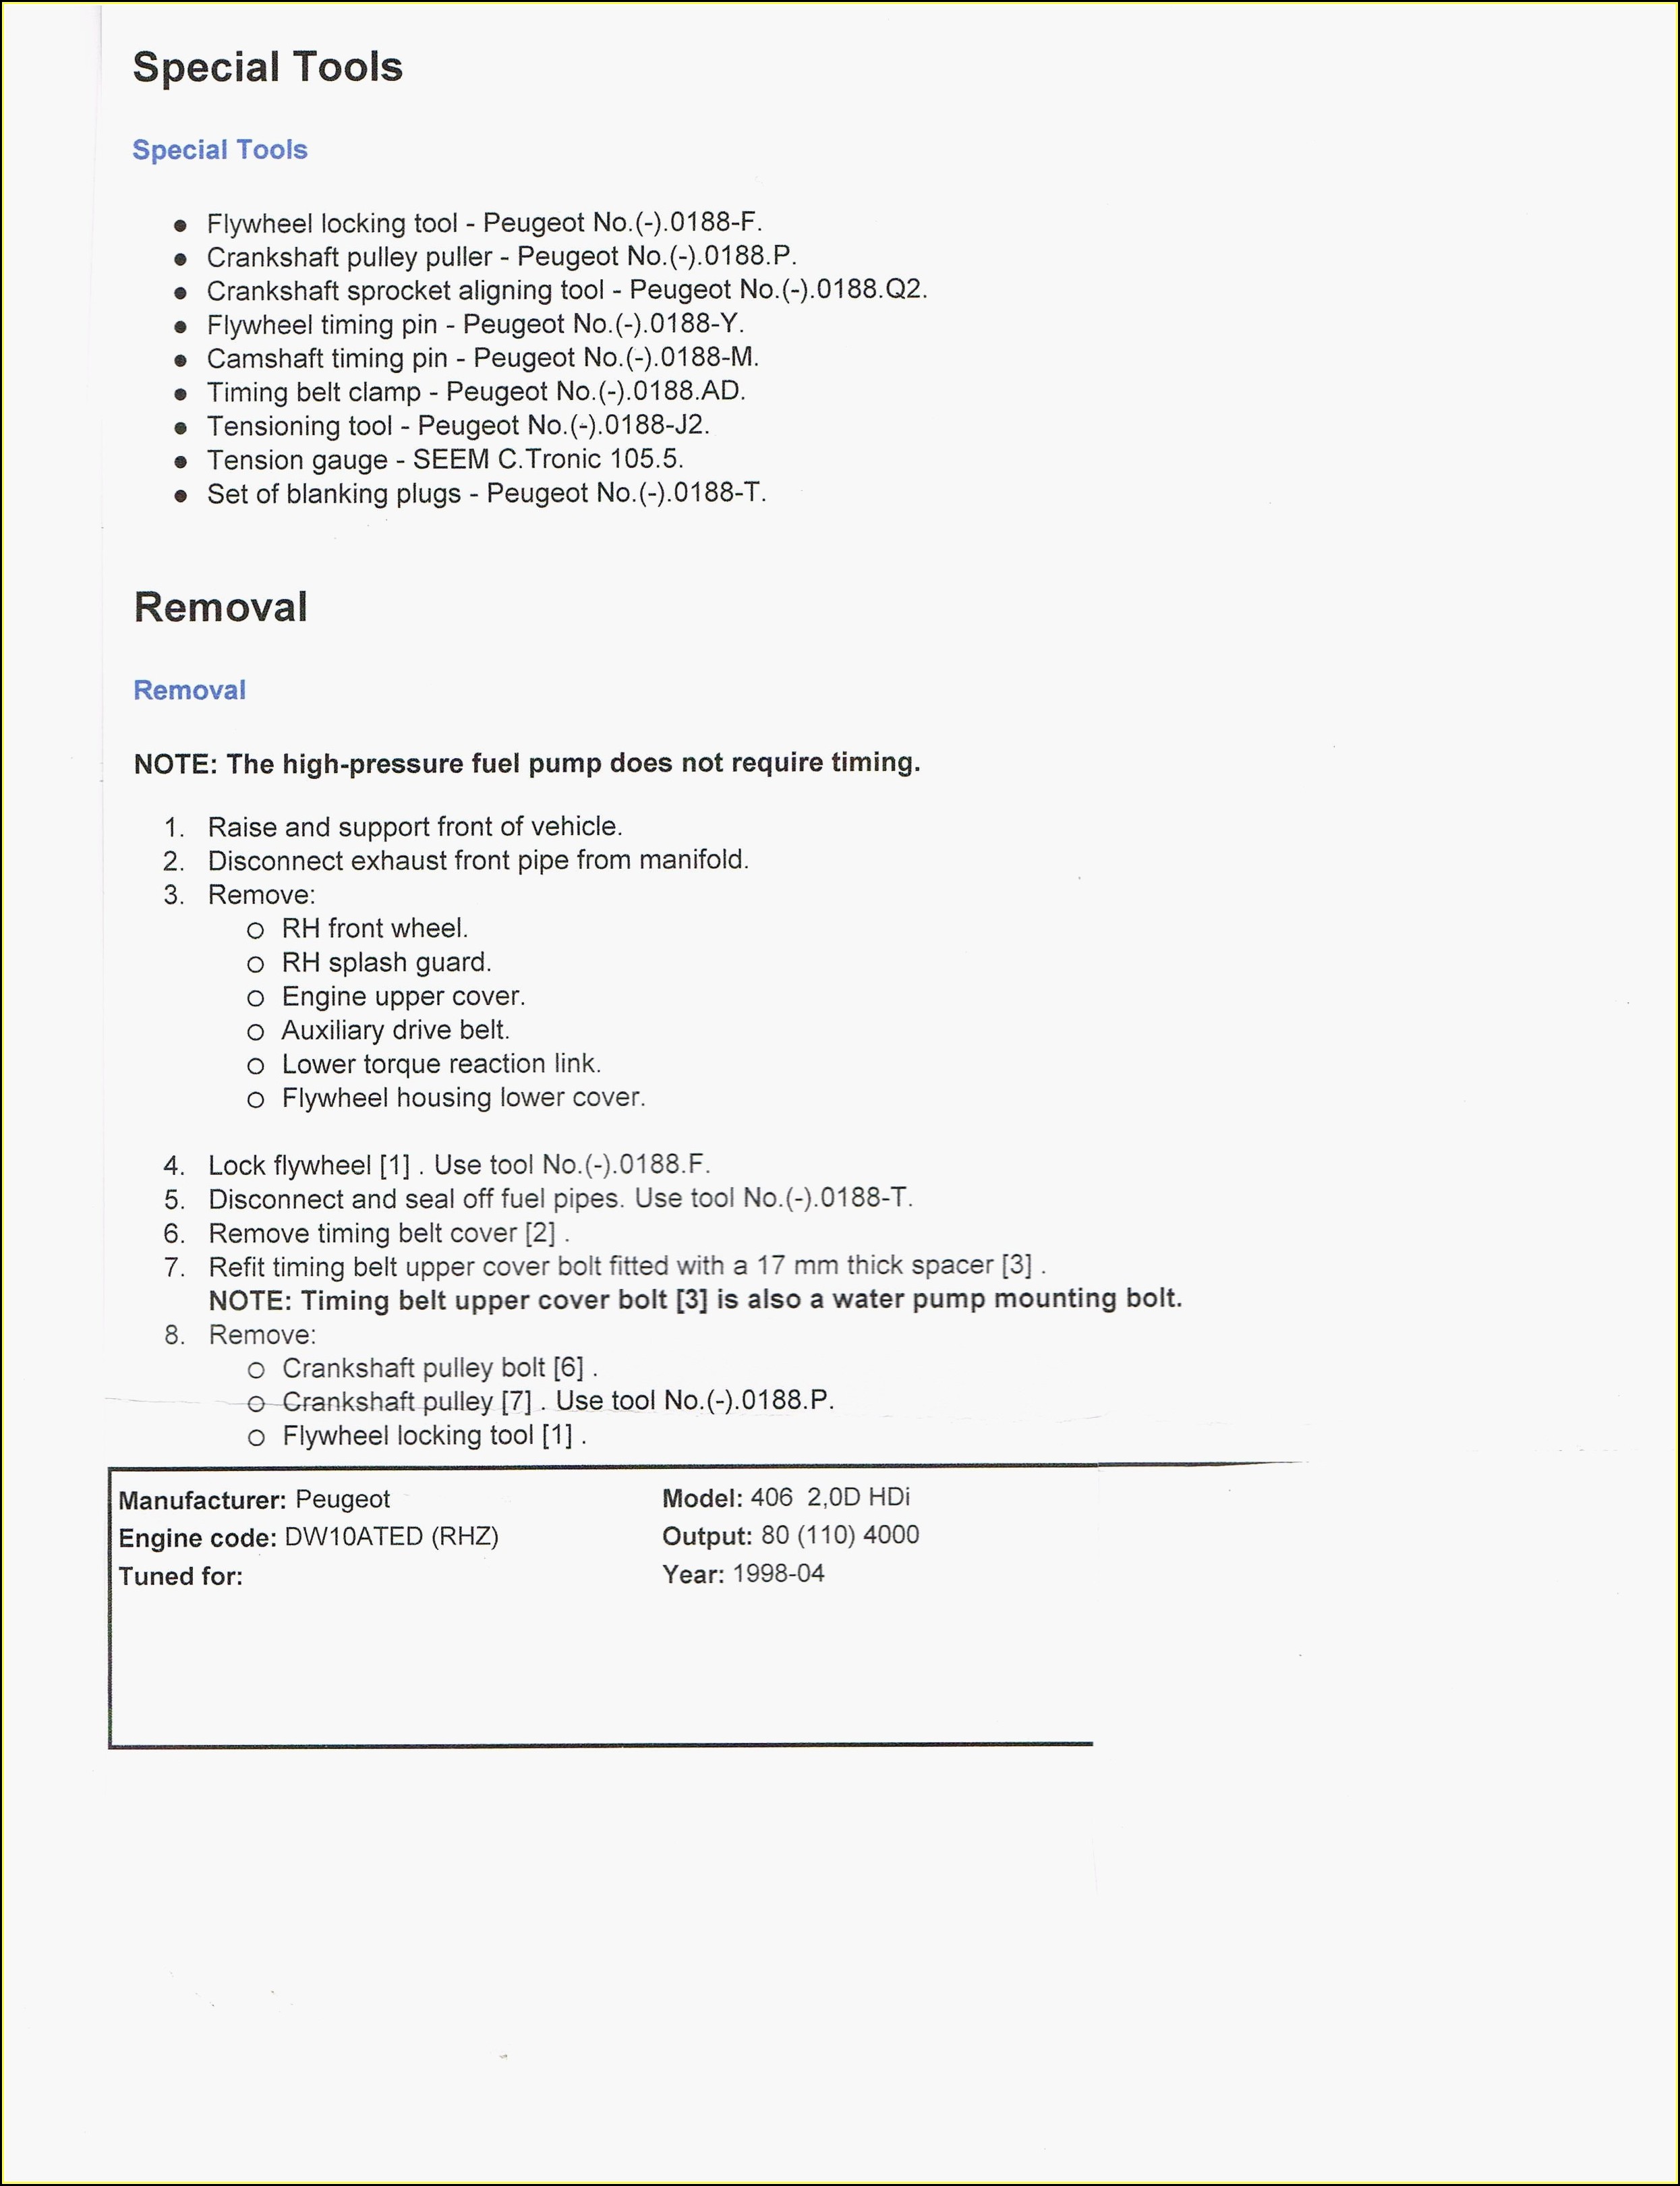 Resume Maker Online Free Download